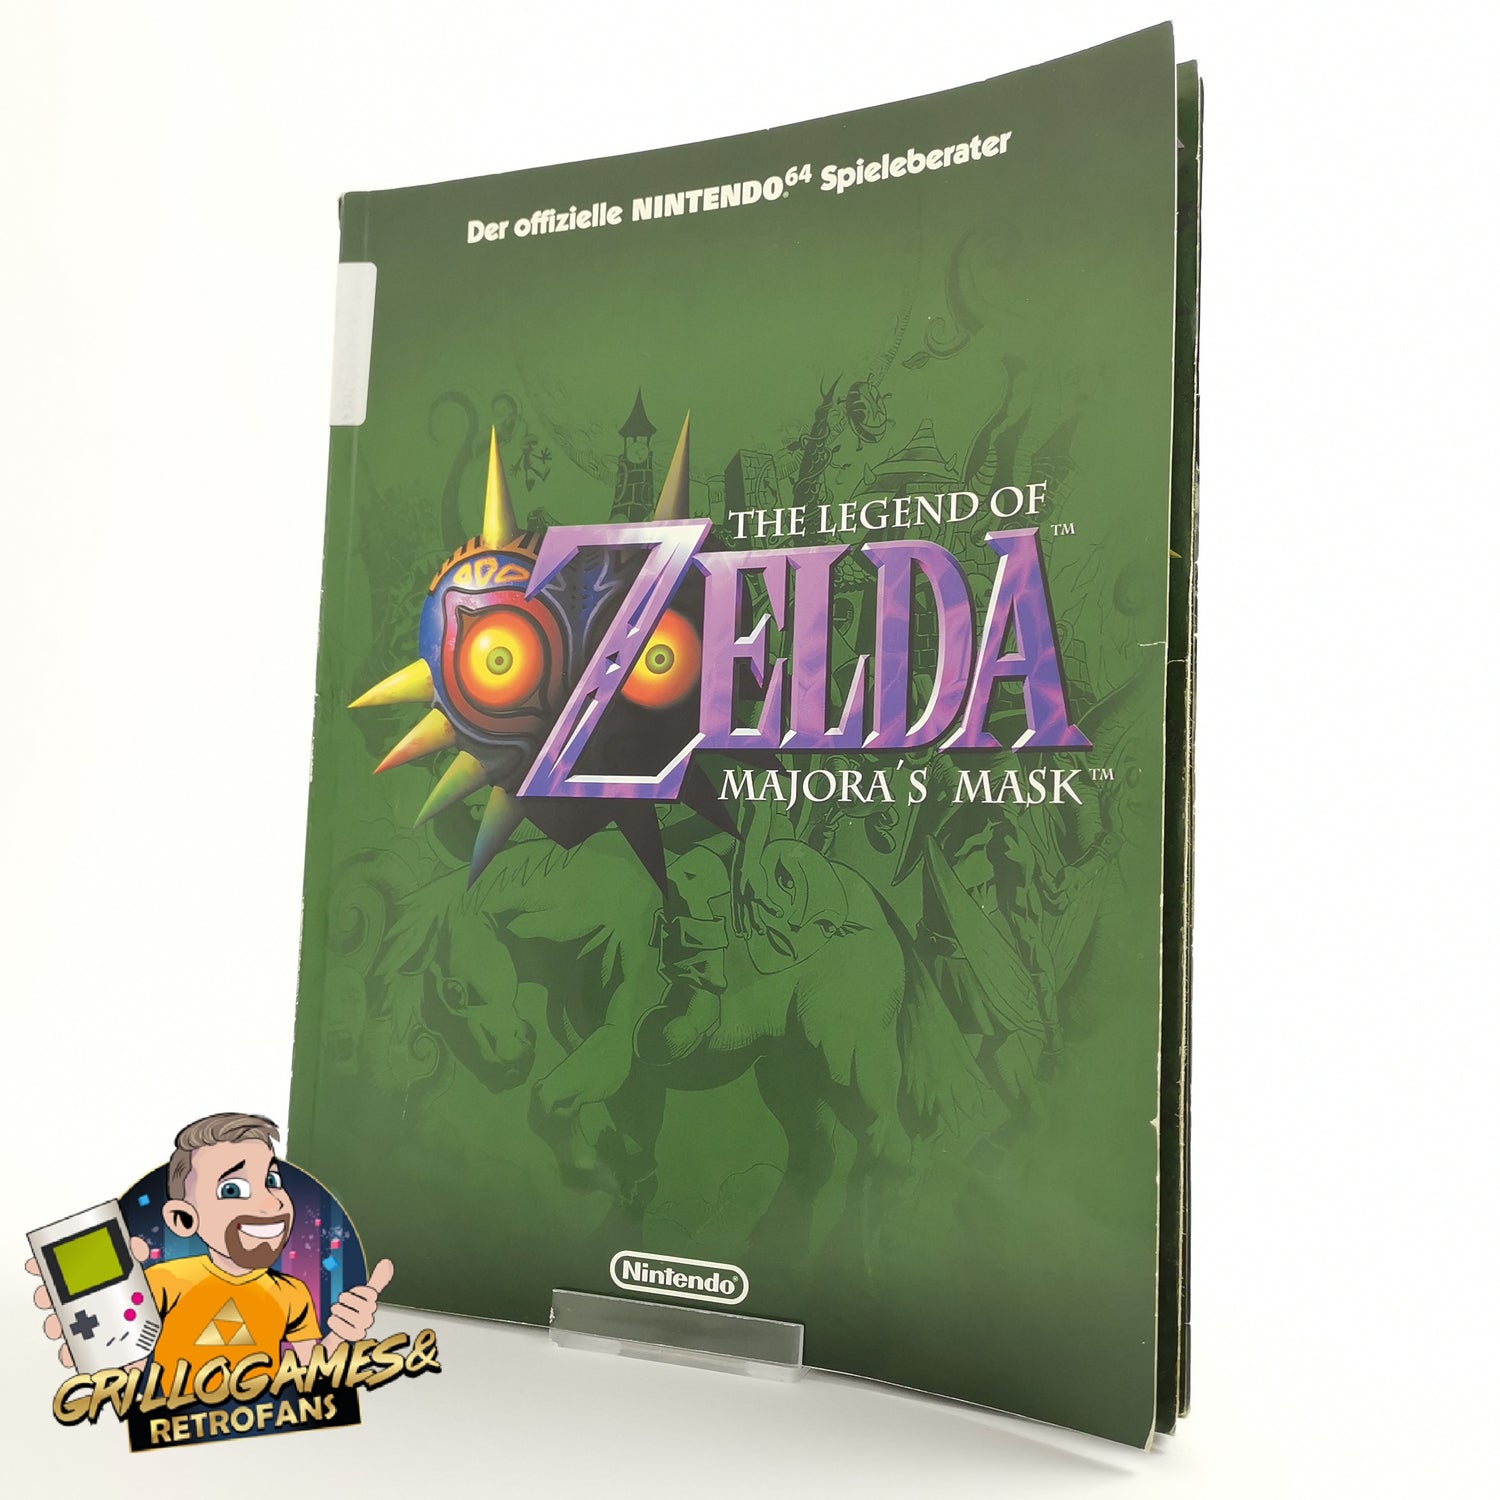 The Official The Legend of Zelda Majora's Mask Game Advisor | N64 solution book